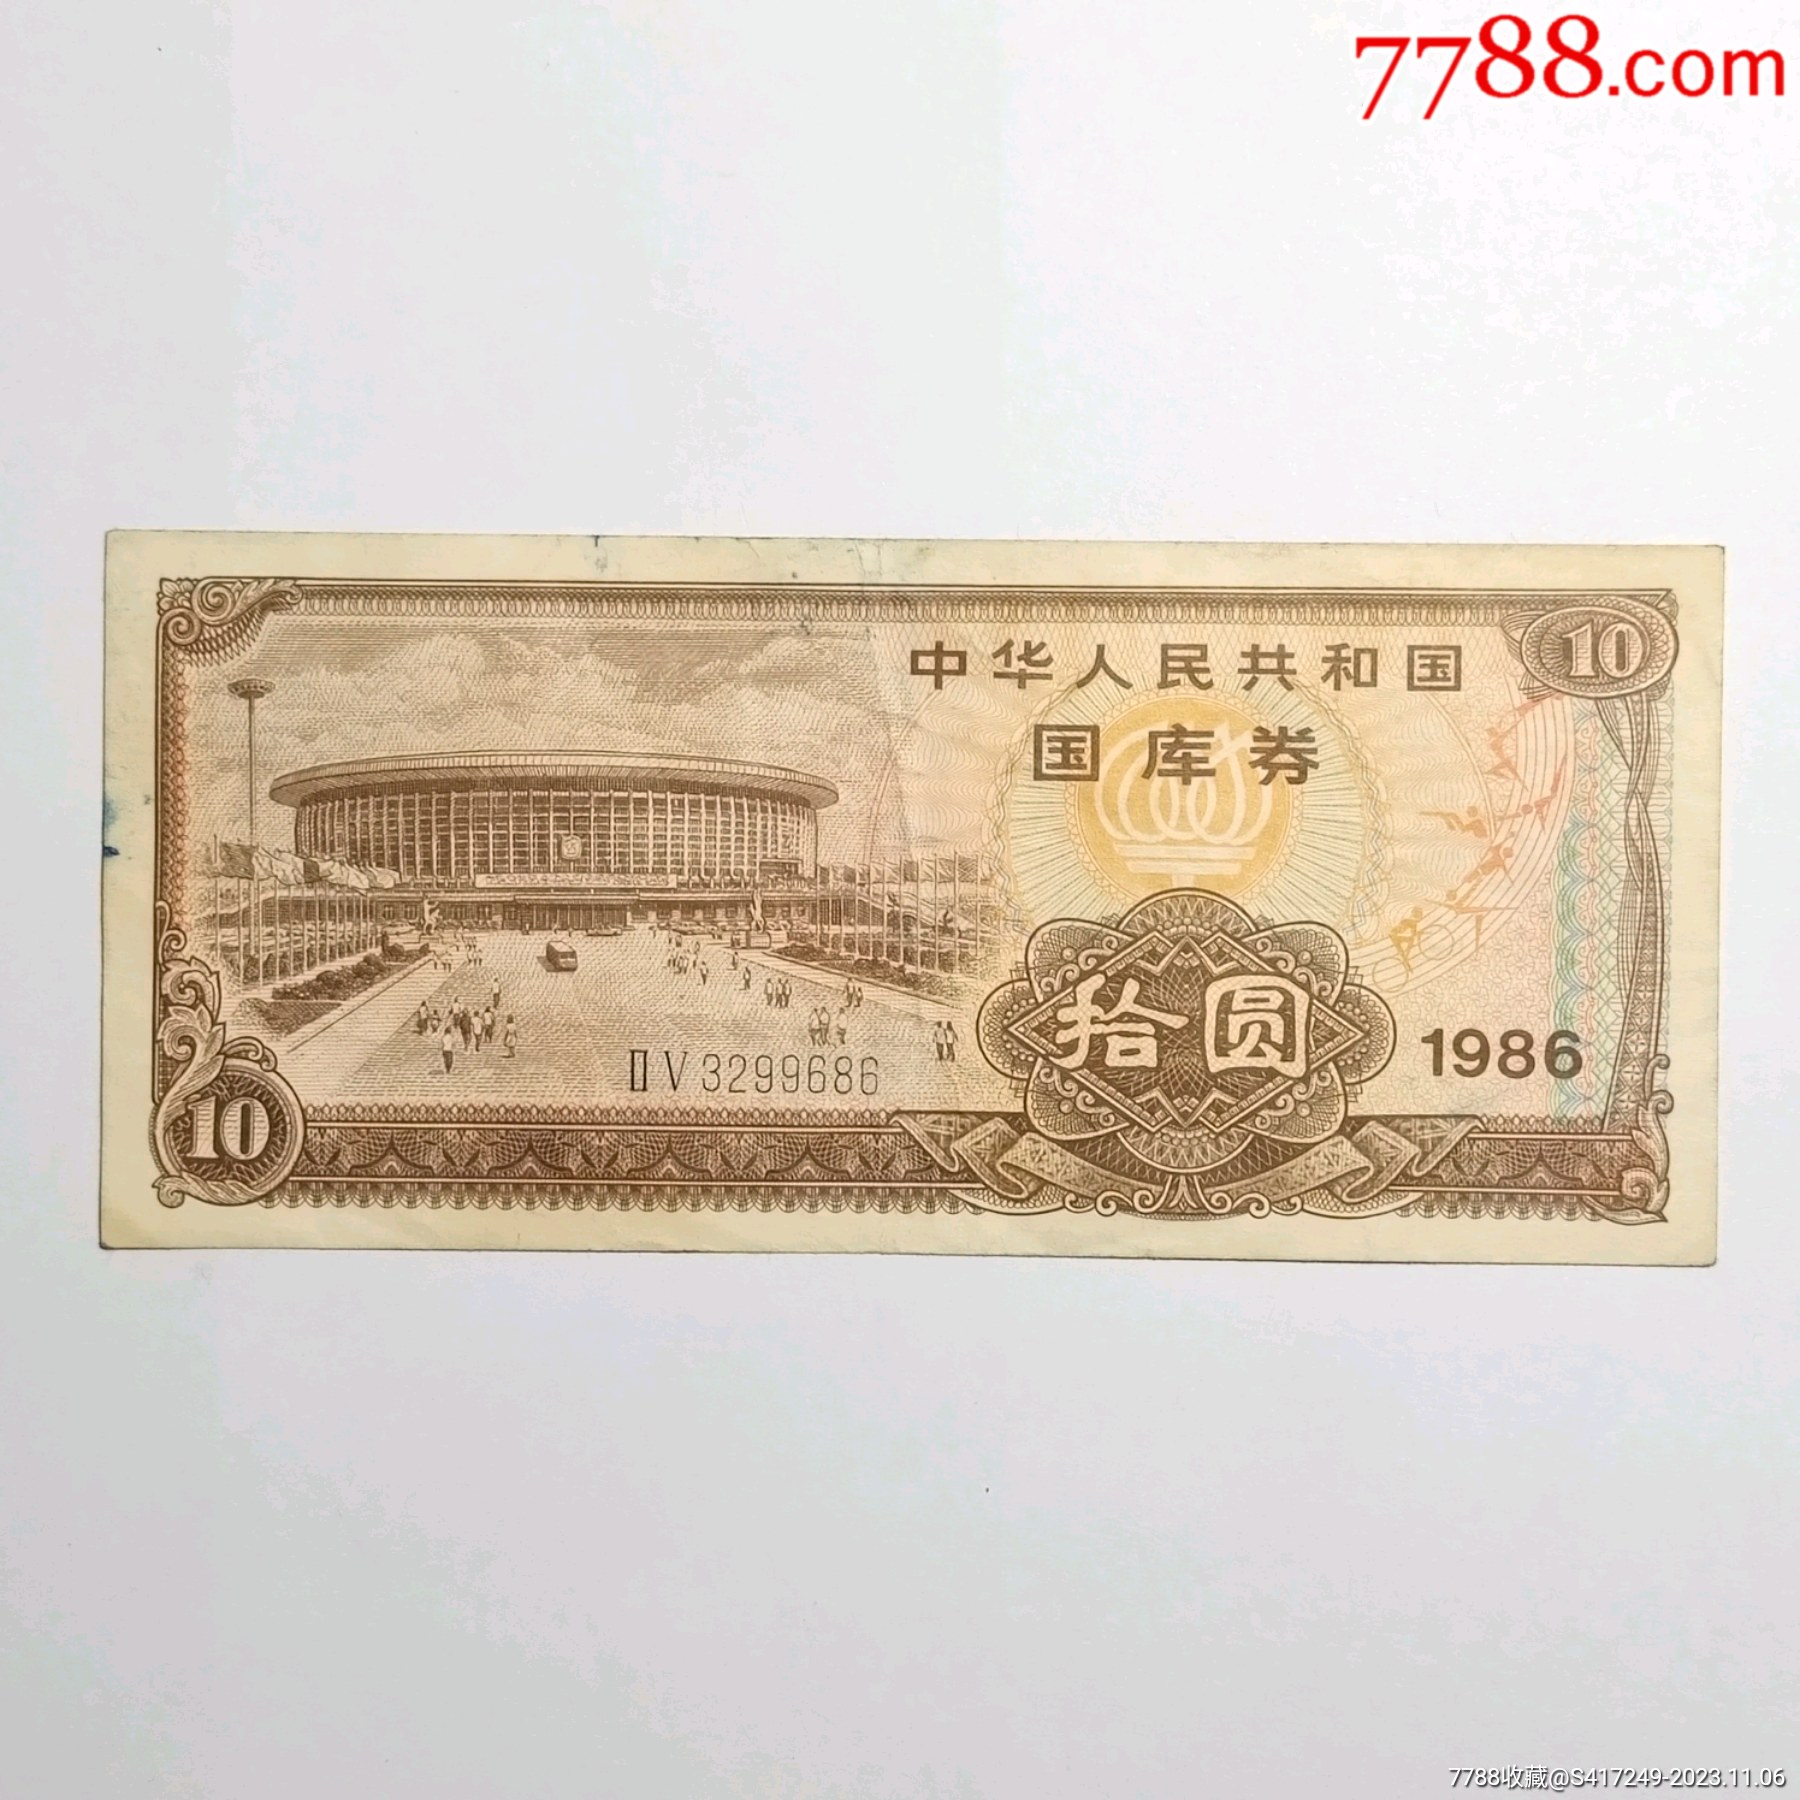 1986年10元国库券